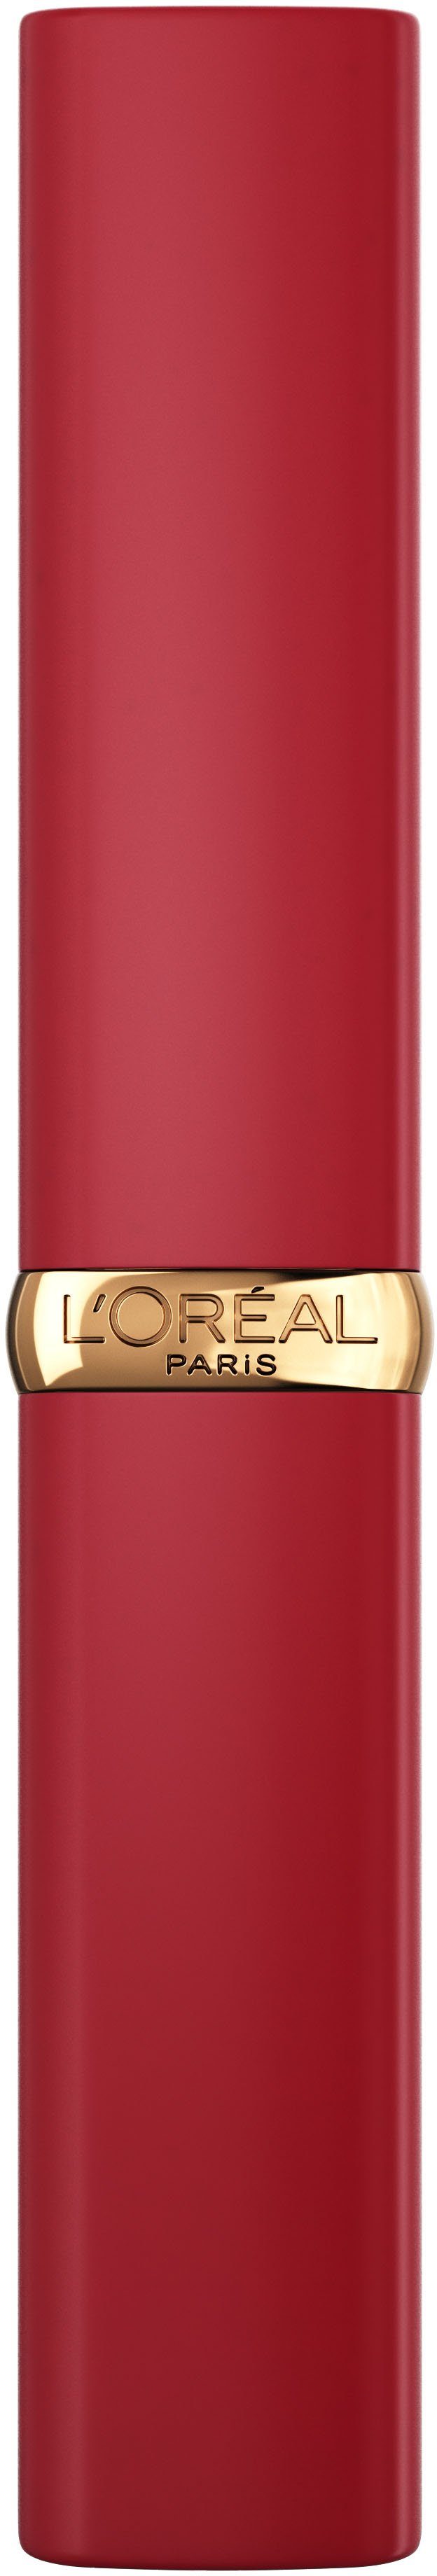 L'ORÉAL PARIS Lippenpflegestift Color Intense Matte Riche Volume